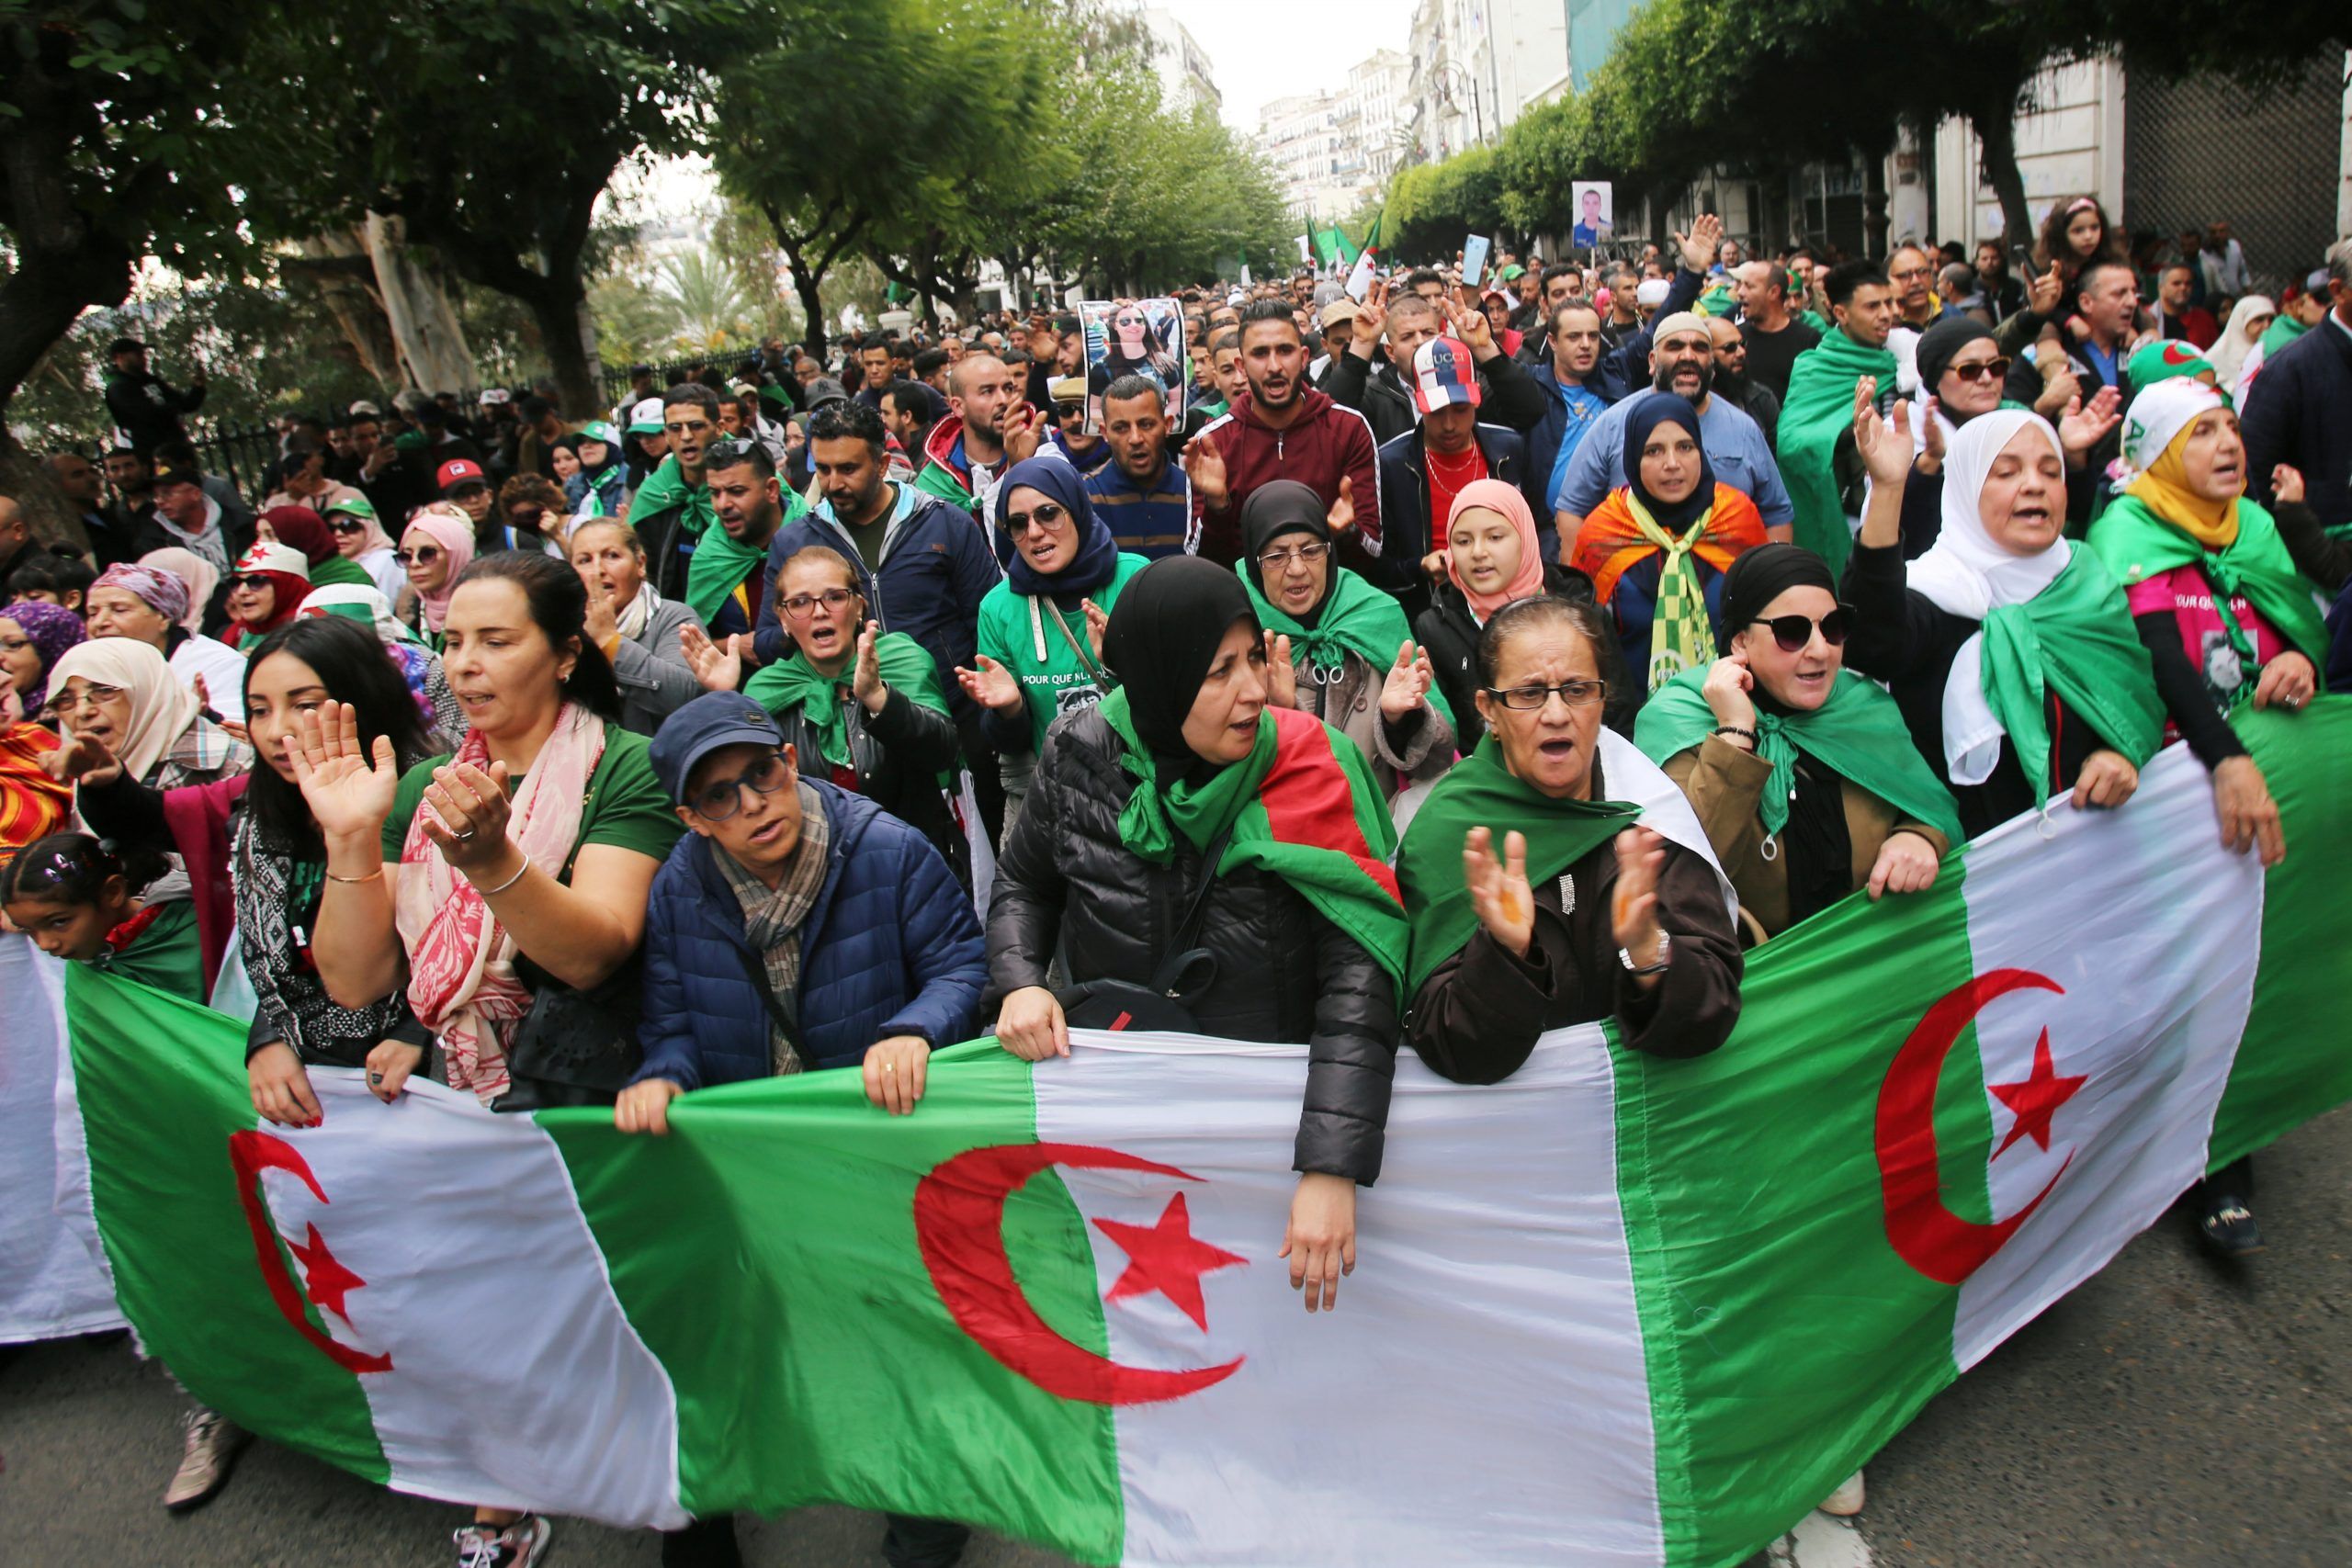 سياسيون: استمرار نفس النظام في الجزائر ترتب عنه تقهقر الحقوق وال